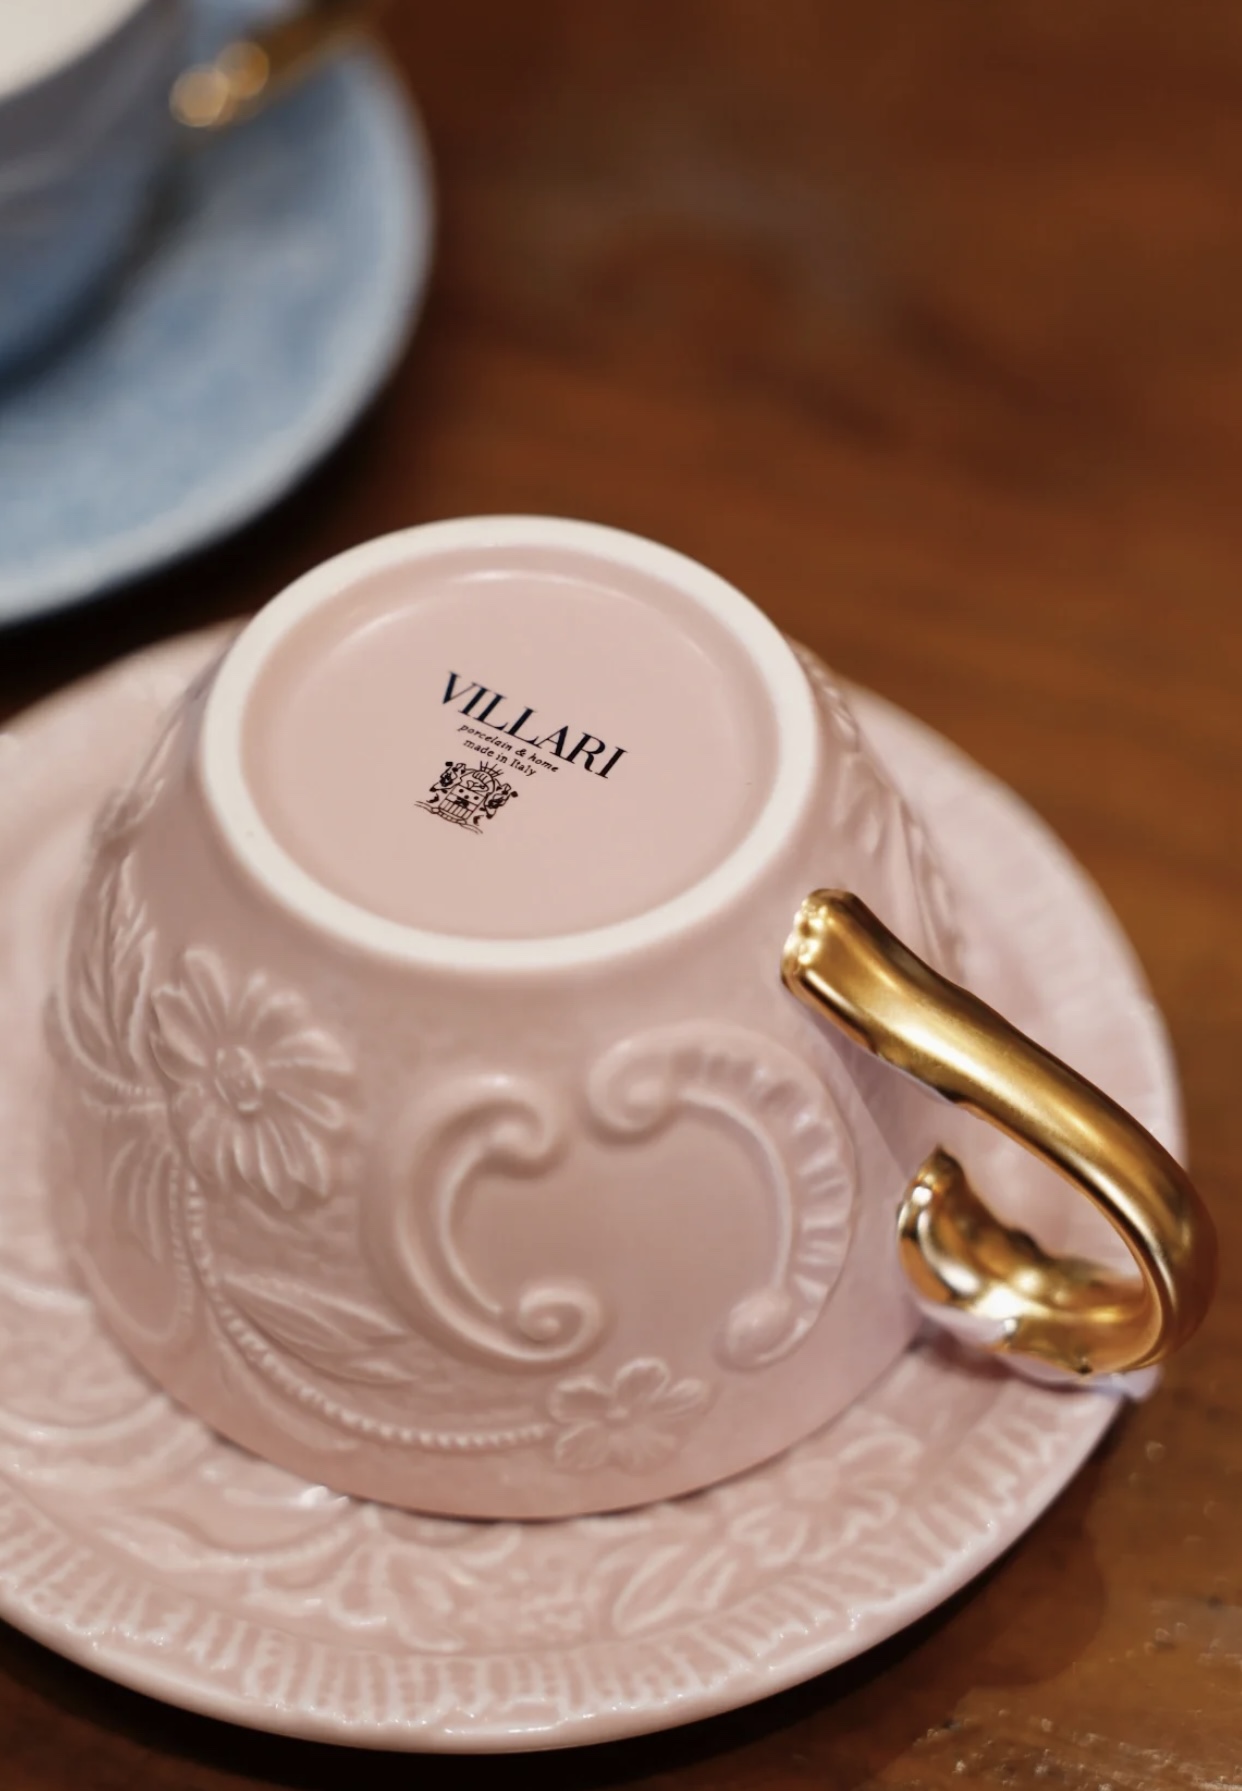 vil*ari咖啡杯碟 维拉里系列 高温浮雕哑光陶瓷咖啡杯红茶杯 礼盒 - 图0